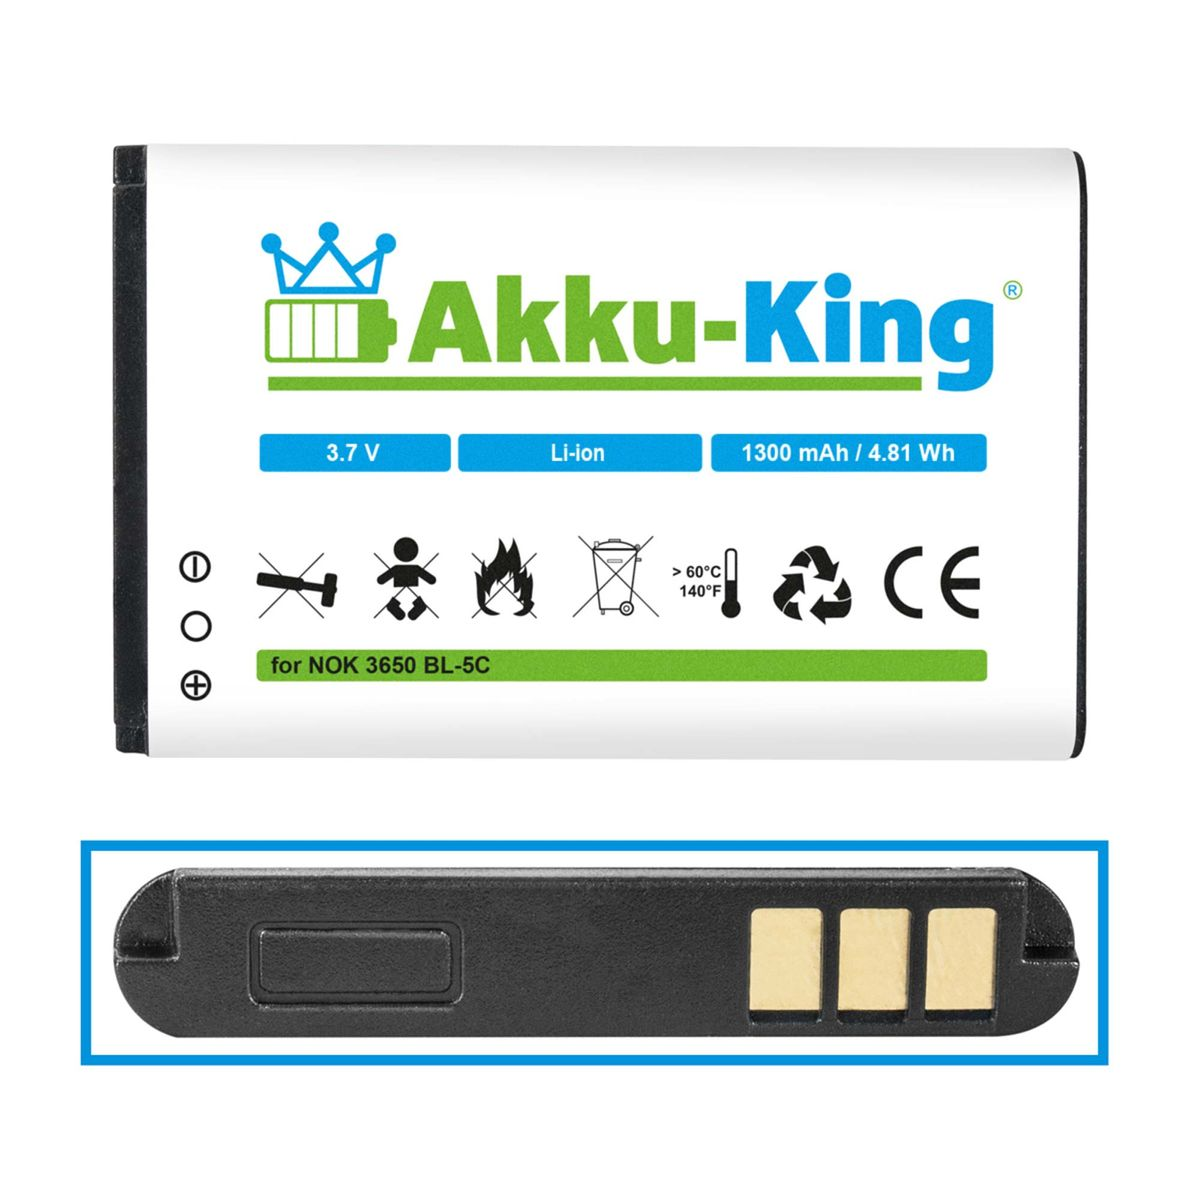 1300mAh GH4000 AKKU-KING Li-Ion Akku Geräte-Akku, mit Volt, Teltonika kompatibel 3.7